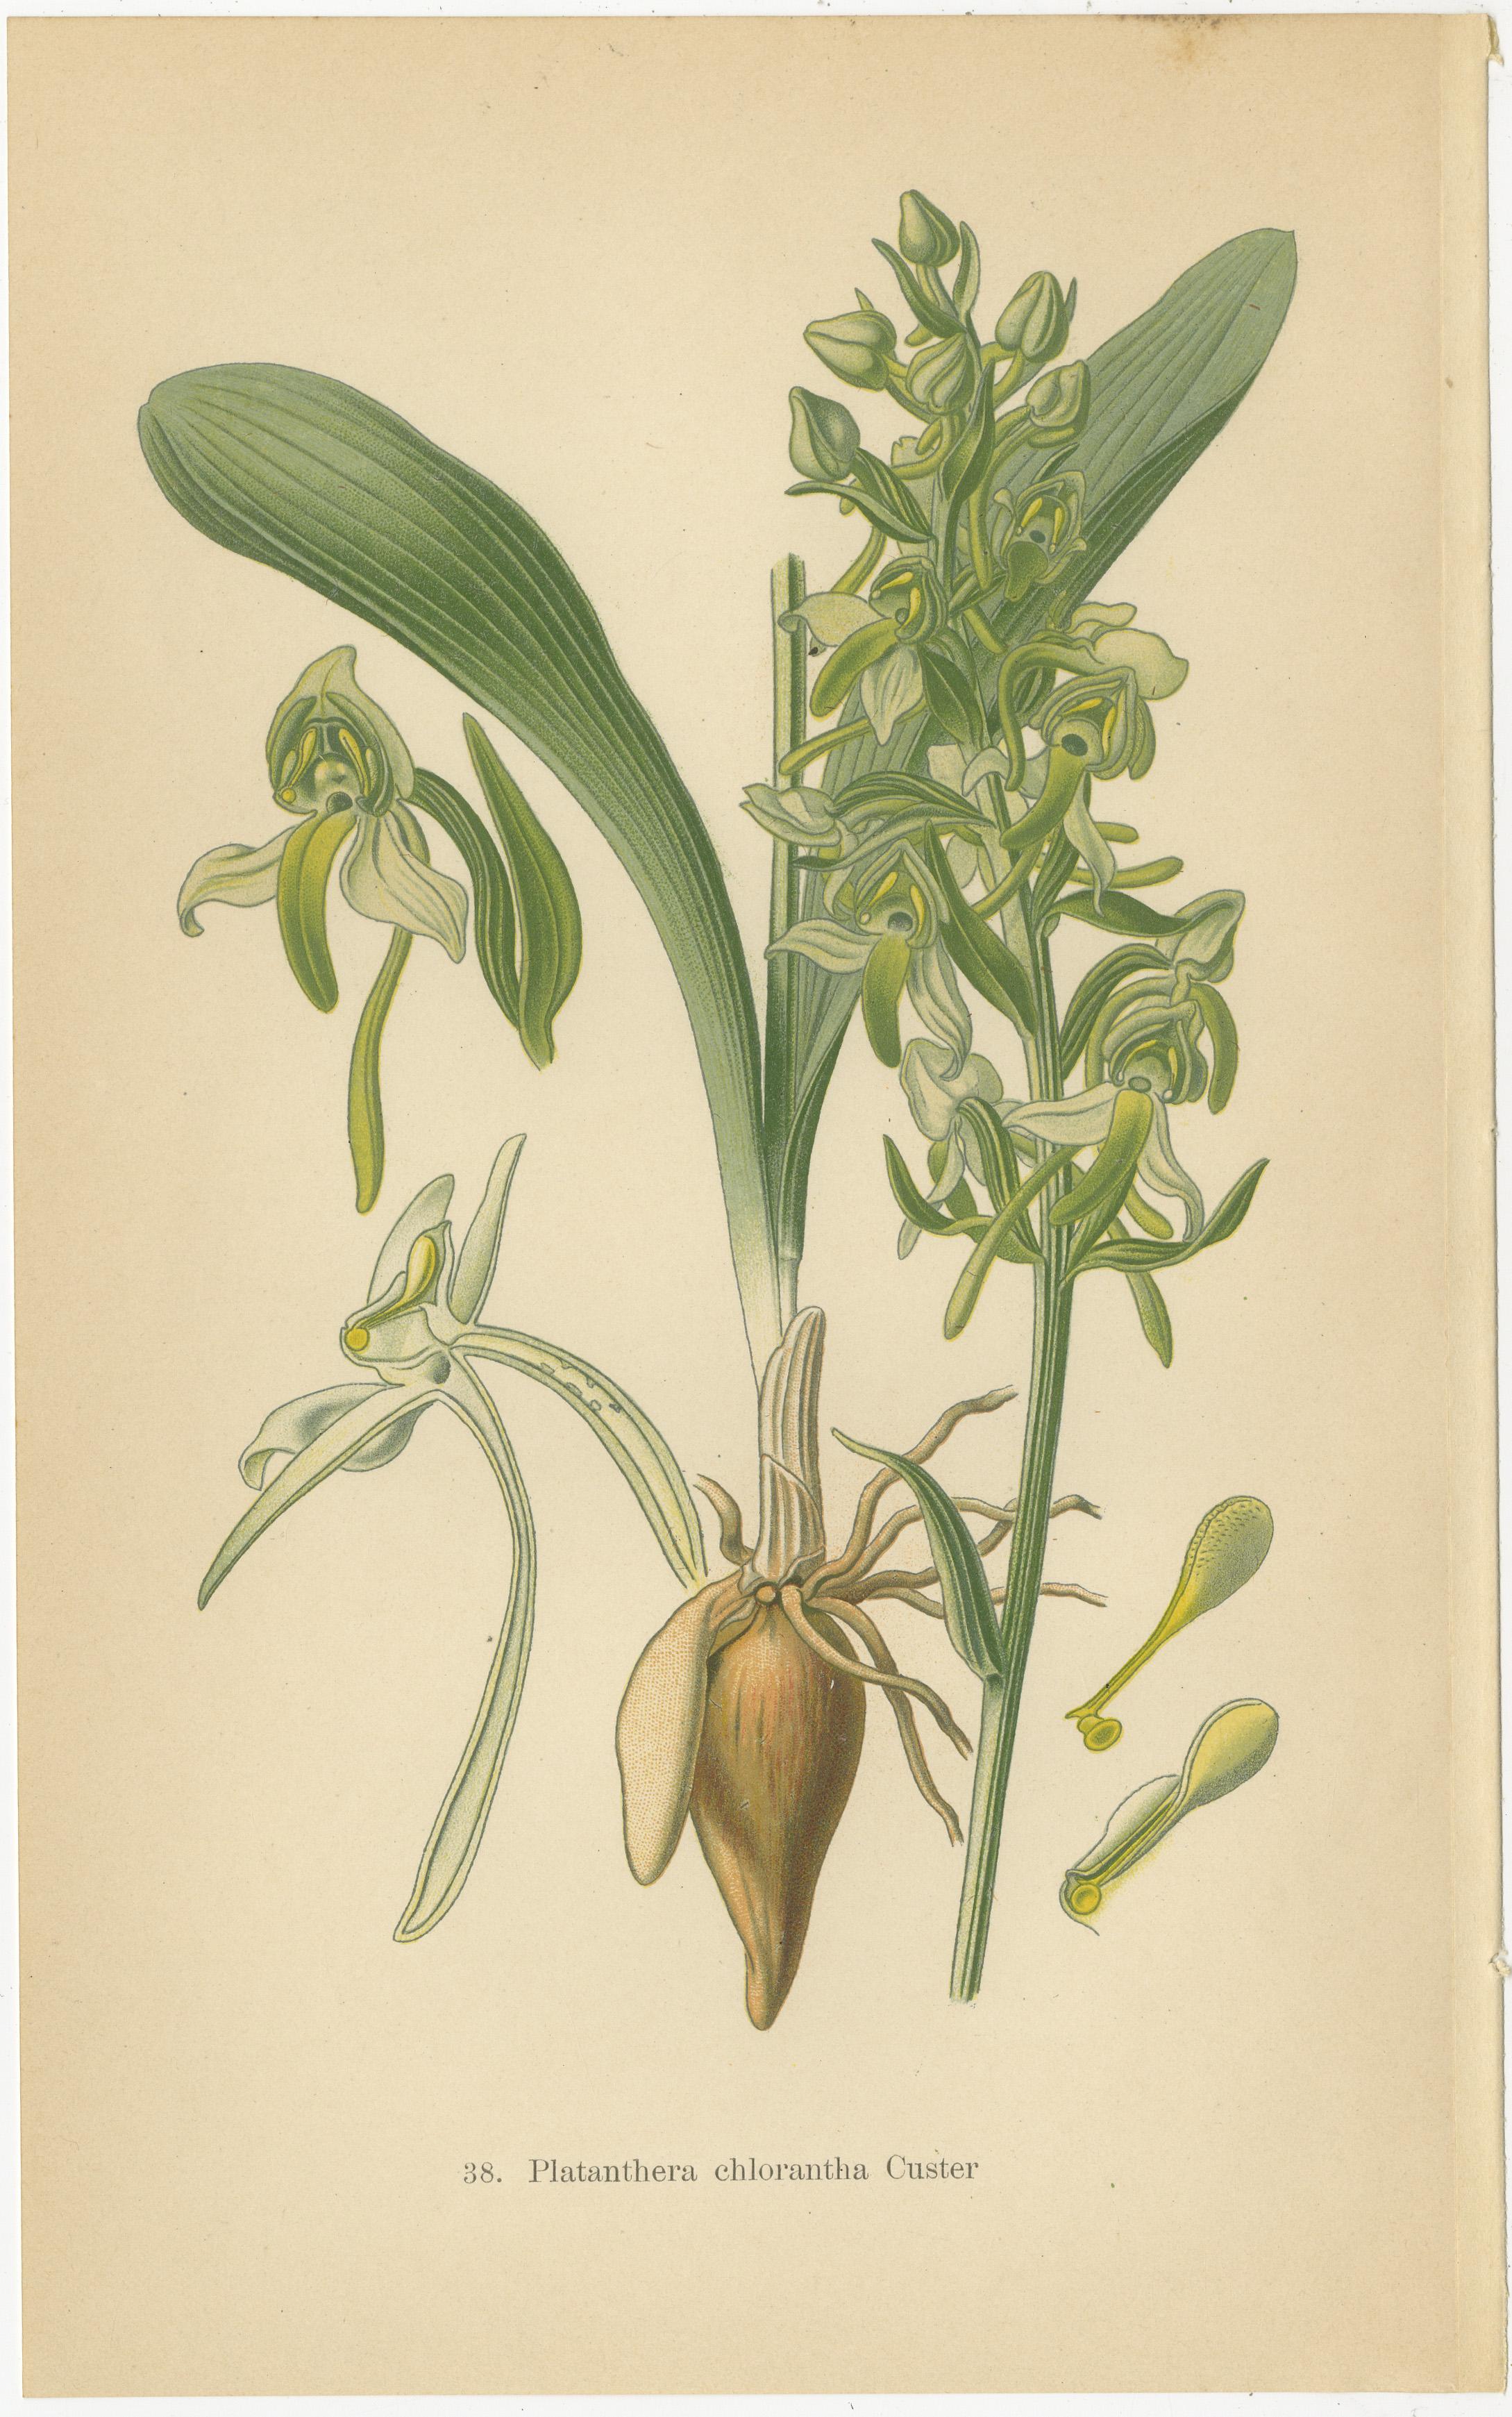 Diese originalen botanischen Abbildungen stammen aus Walter Müllers Publikation aus dem Jahr 1904, in der die Grundformen der in Deutschland und den umliegenden Gebieten vorkommenden Orchideenarten vorgestellt werden. Die detaillierten Kunstwerke